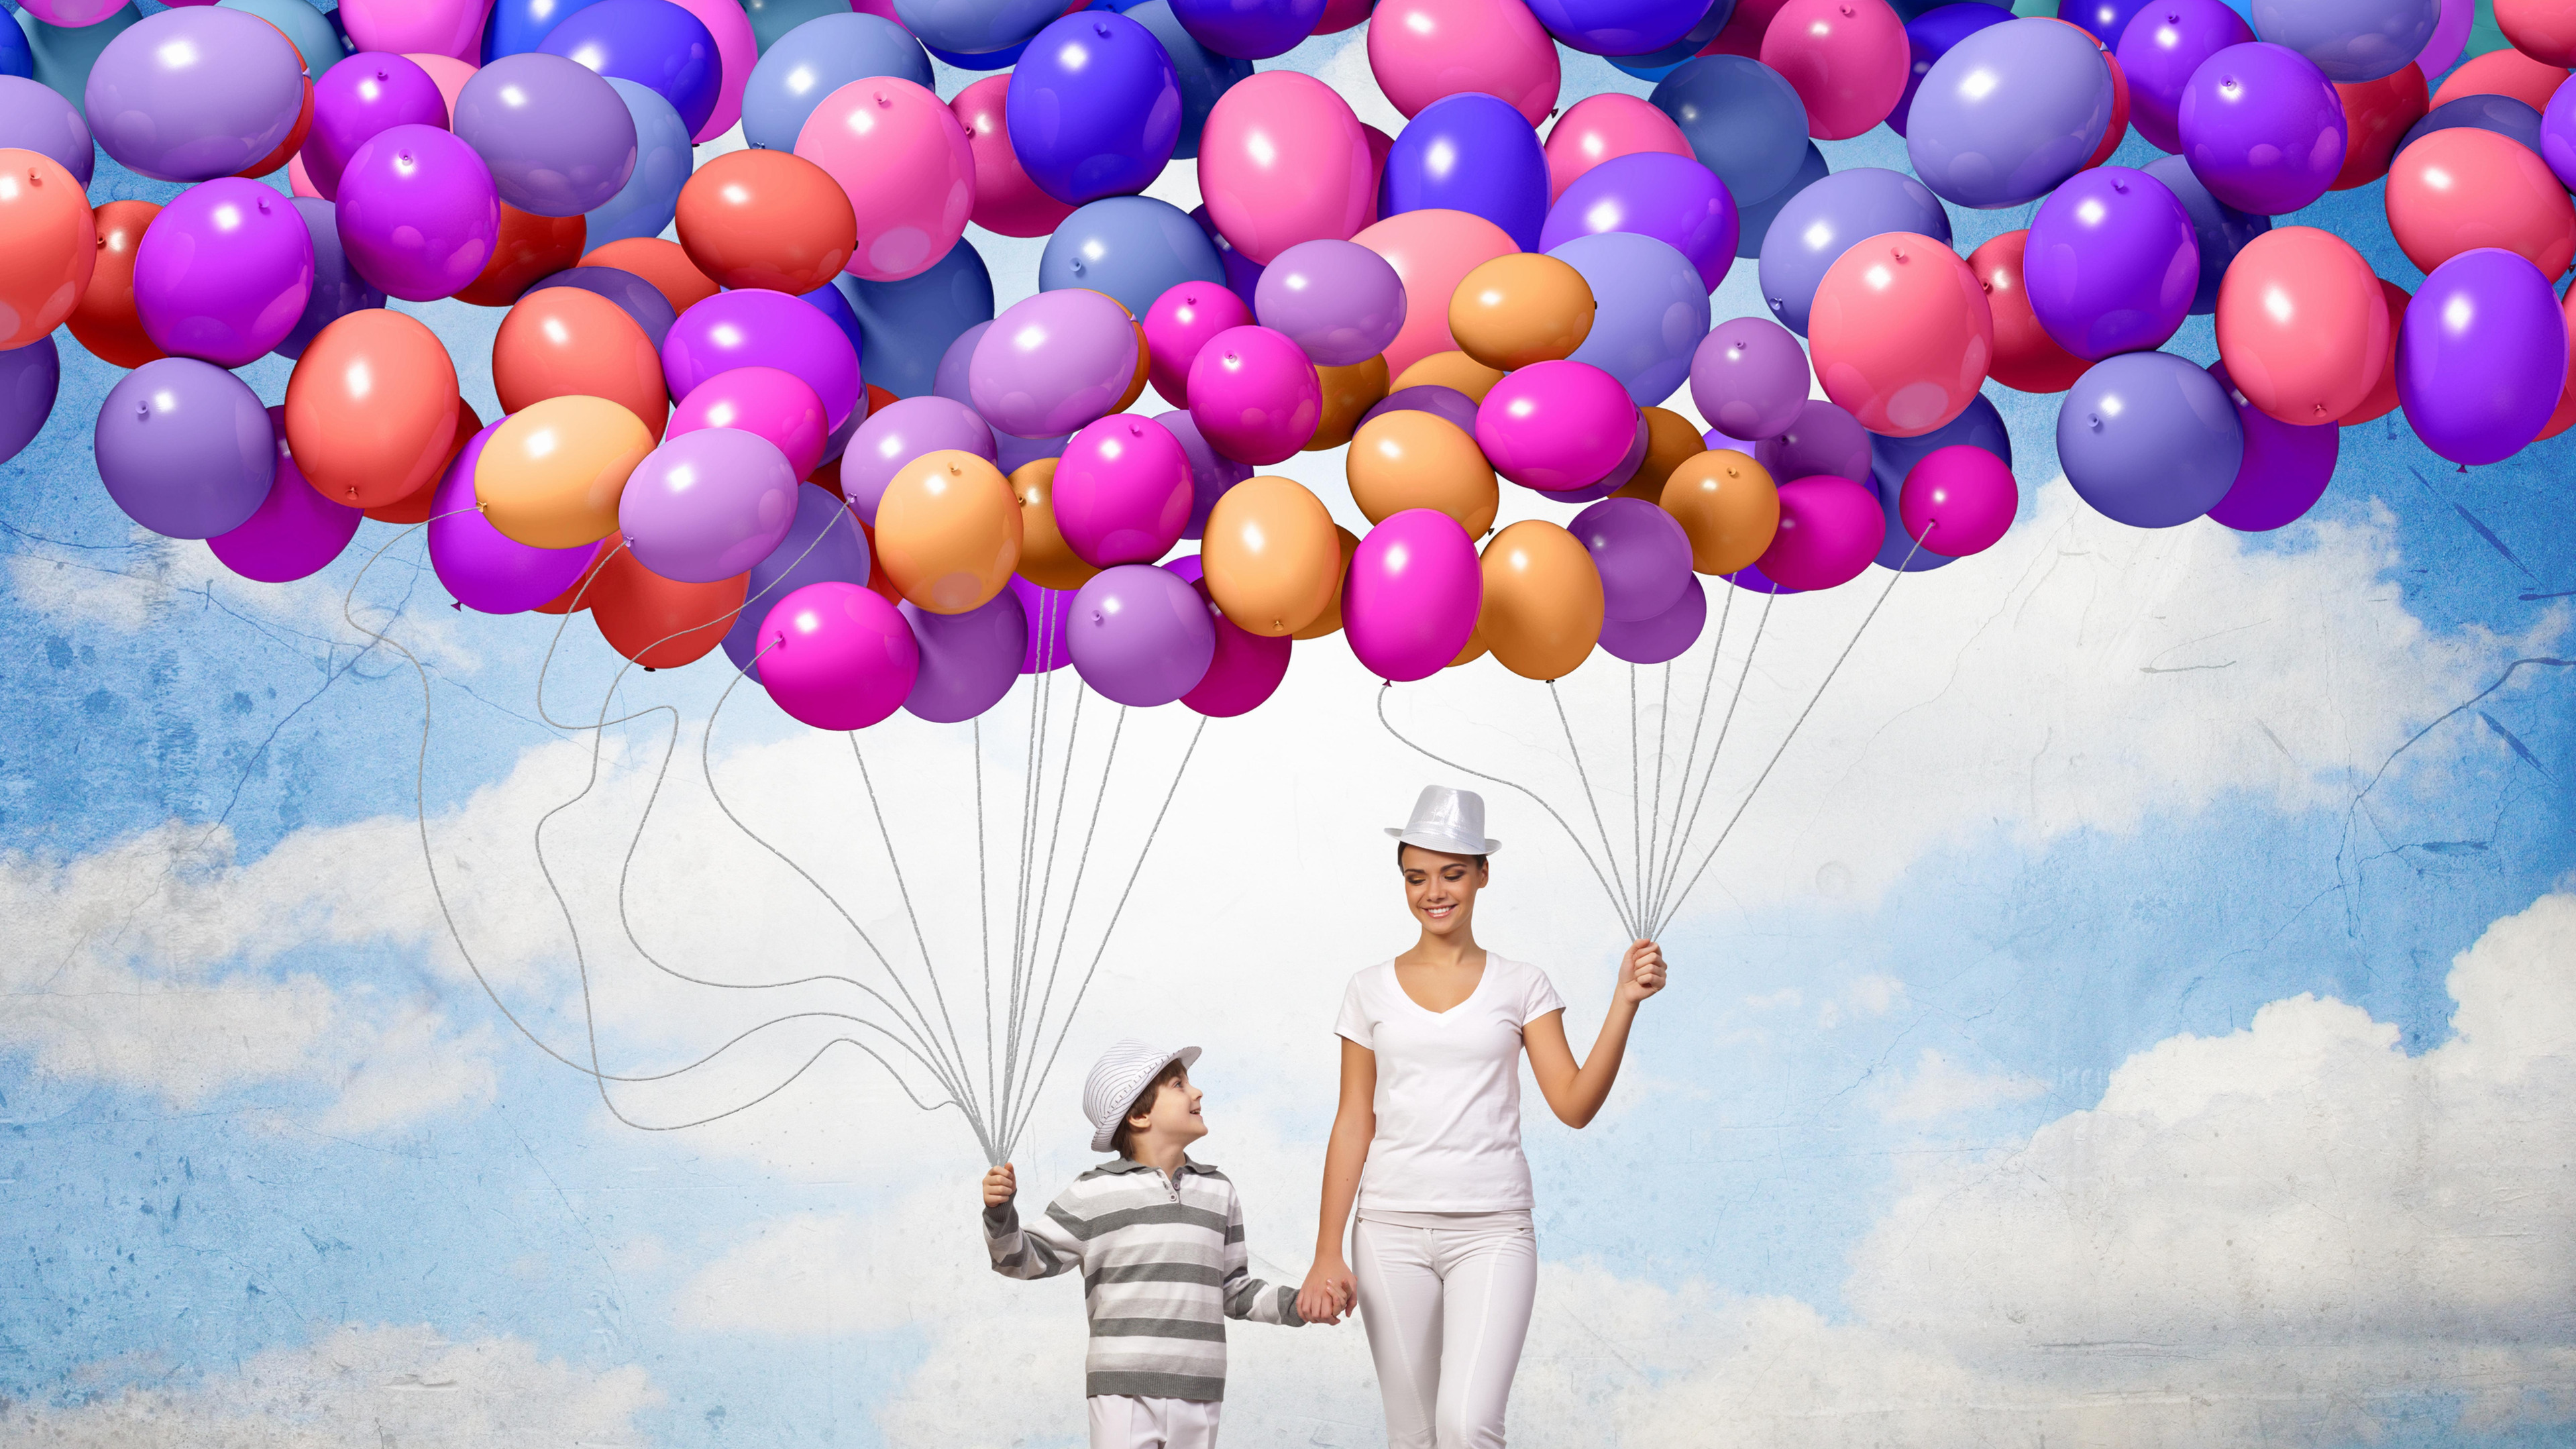 Описание воздушных шаров. Воздушный шарик. Фон с воздушными шарами. Воздушный шар в небе. Праздник с воздушными шарами.